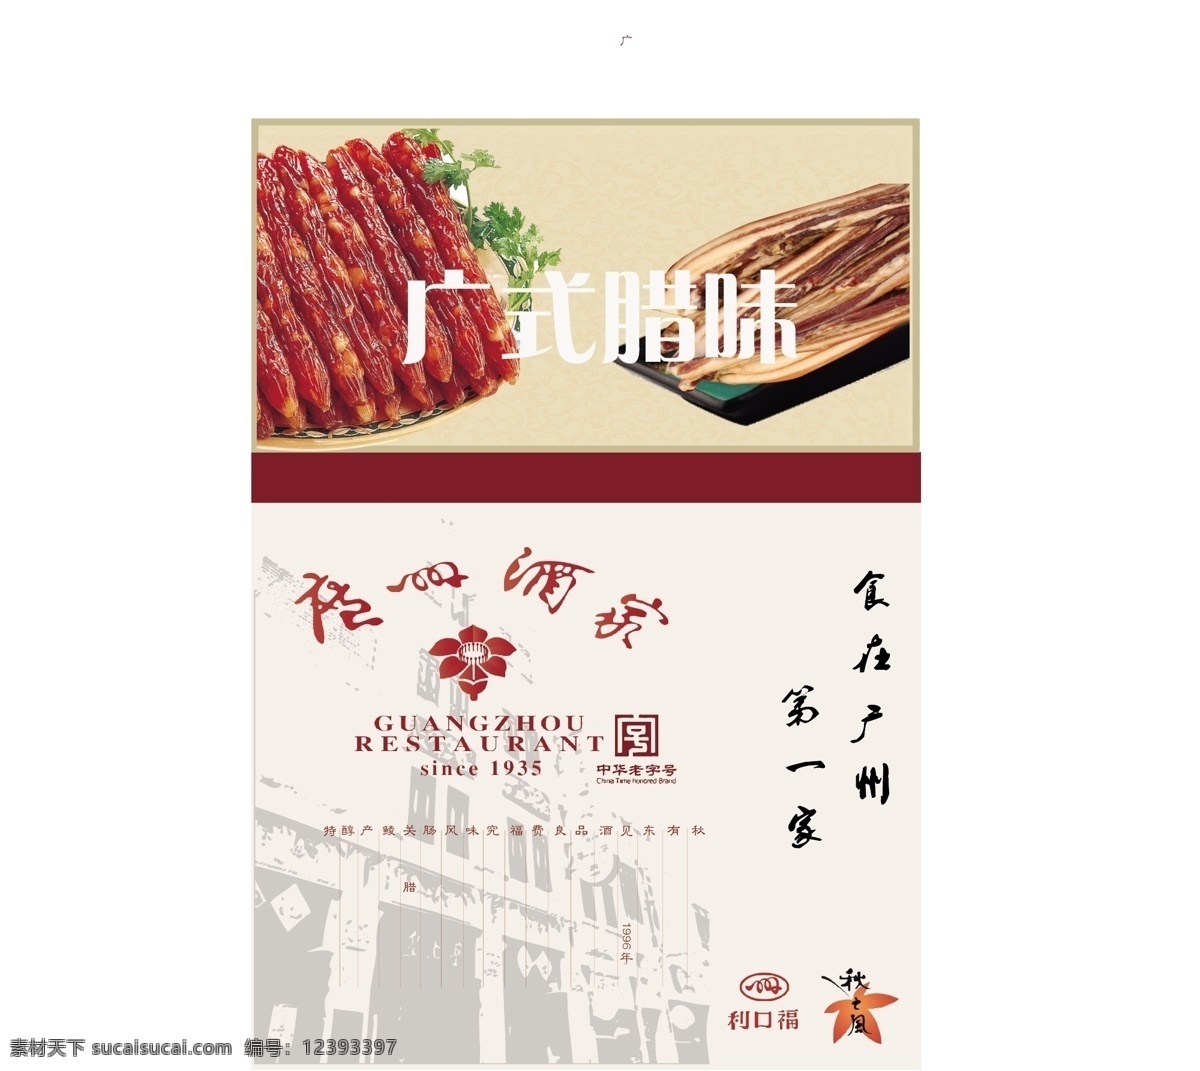 广州 酒家 腊味 海报 广州酒家 广式 腊肉 腊肠 广告